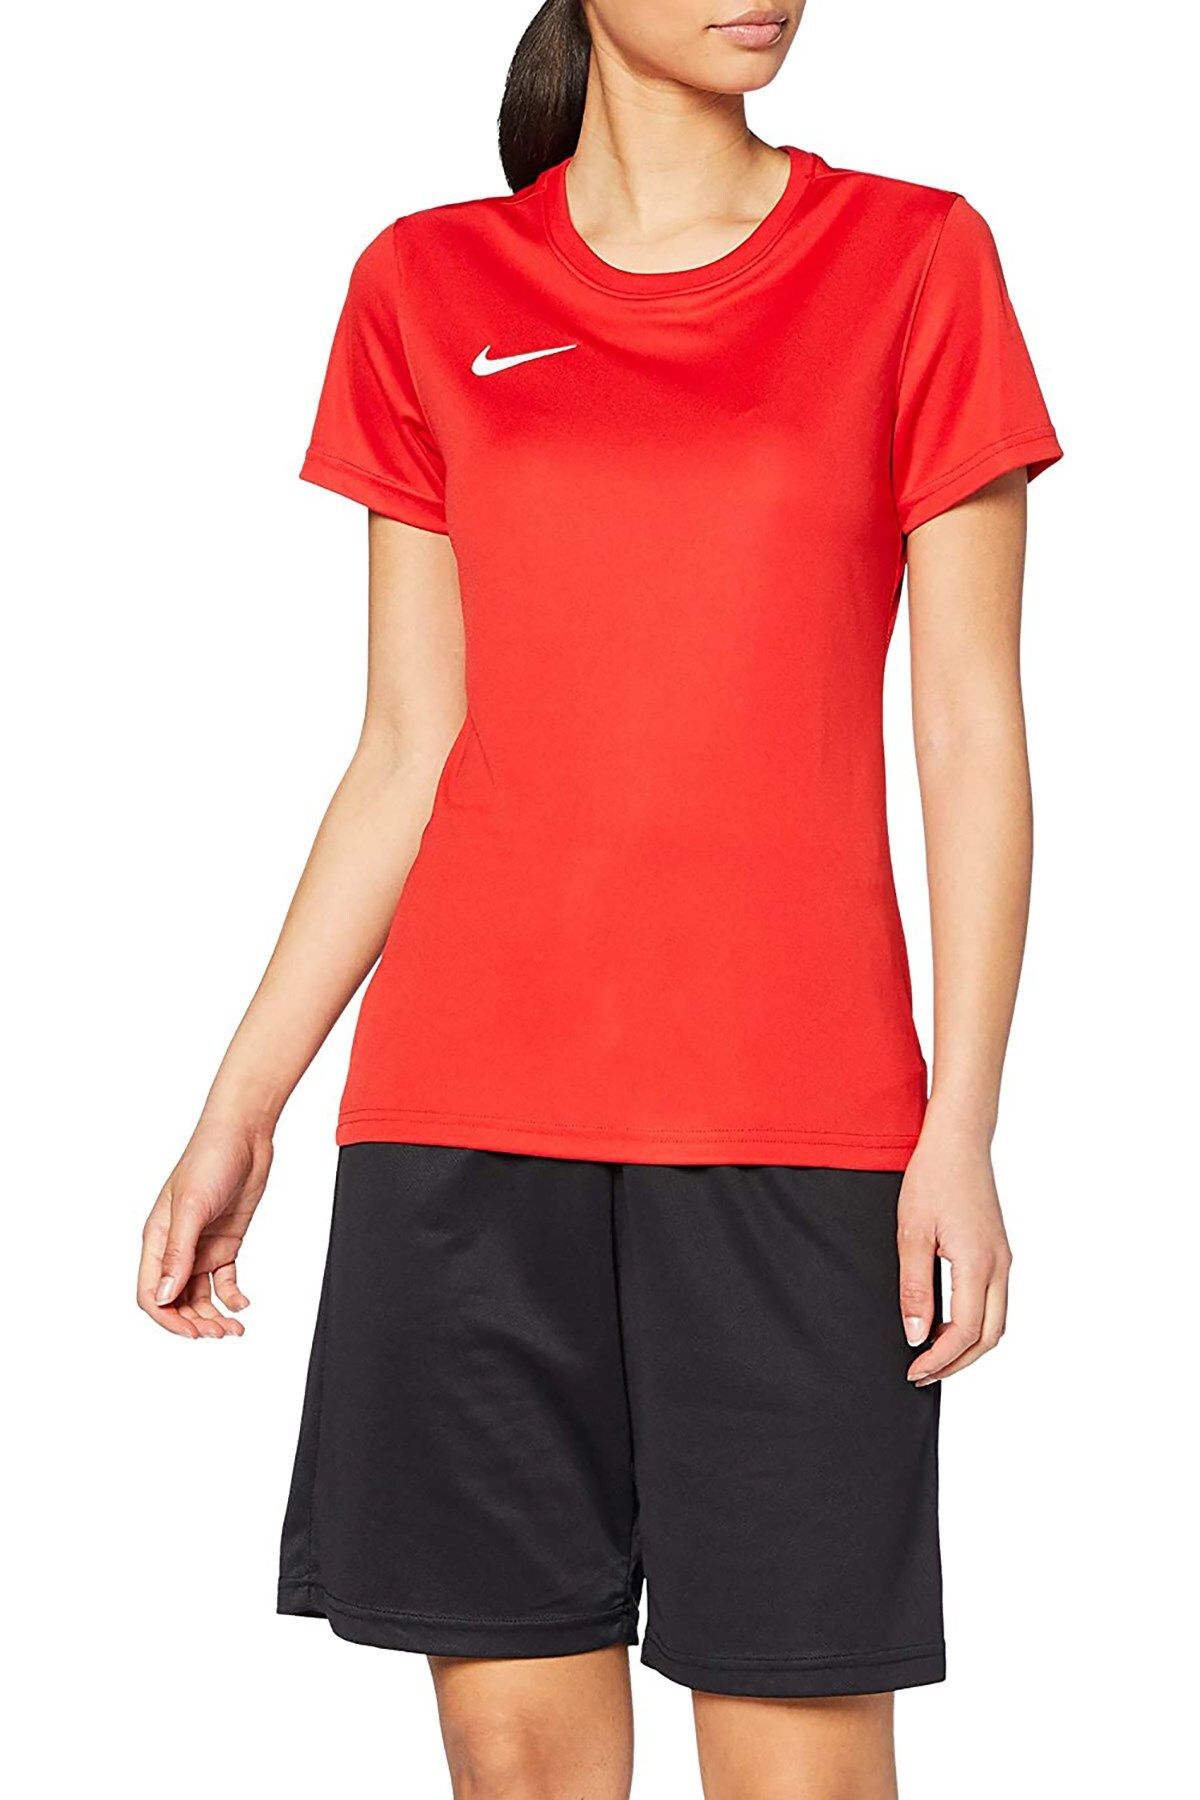 Nike Dry Park Vıı Kadın Tişörtü Bv6728-657